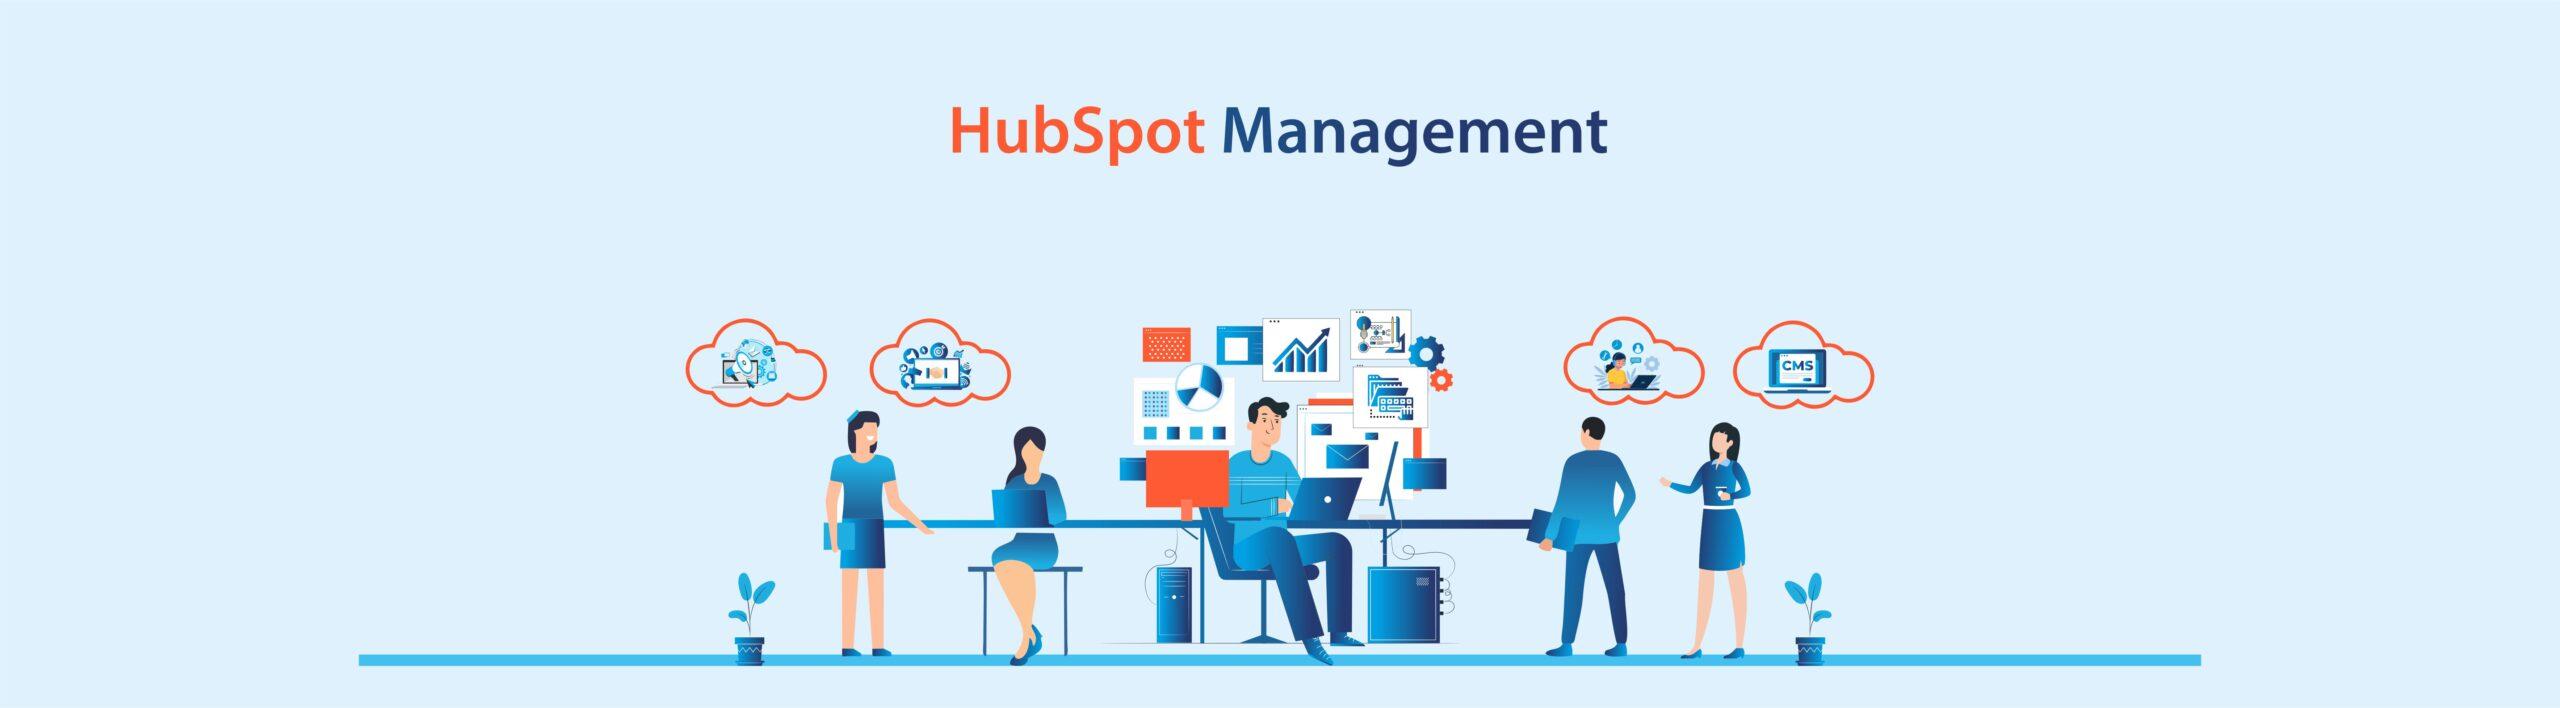 HubSpot Management